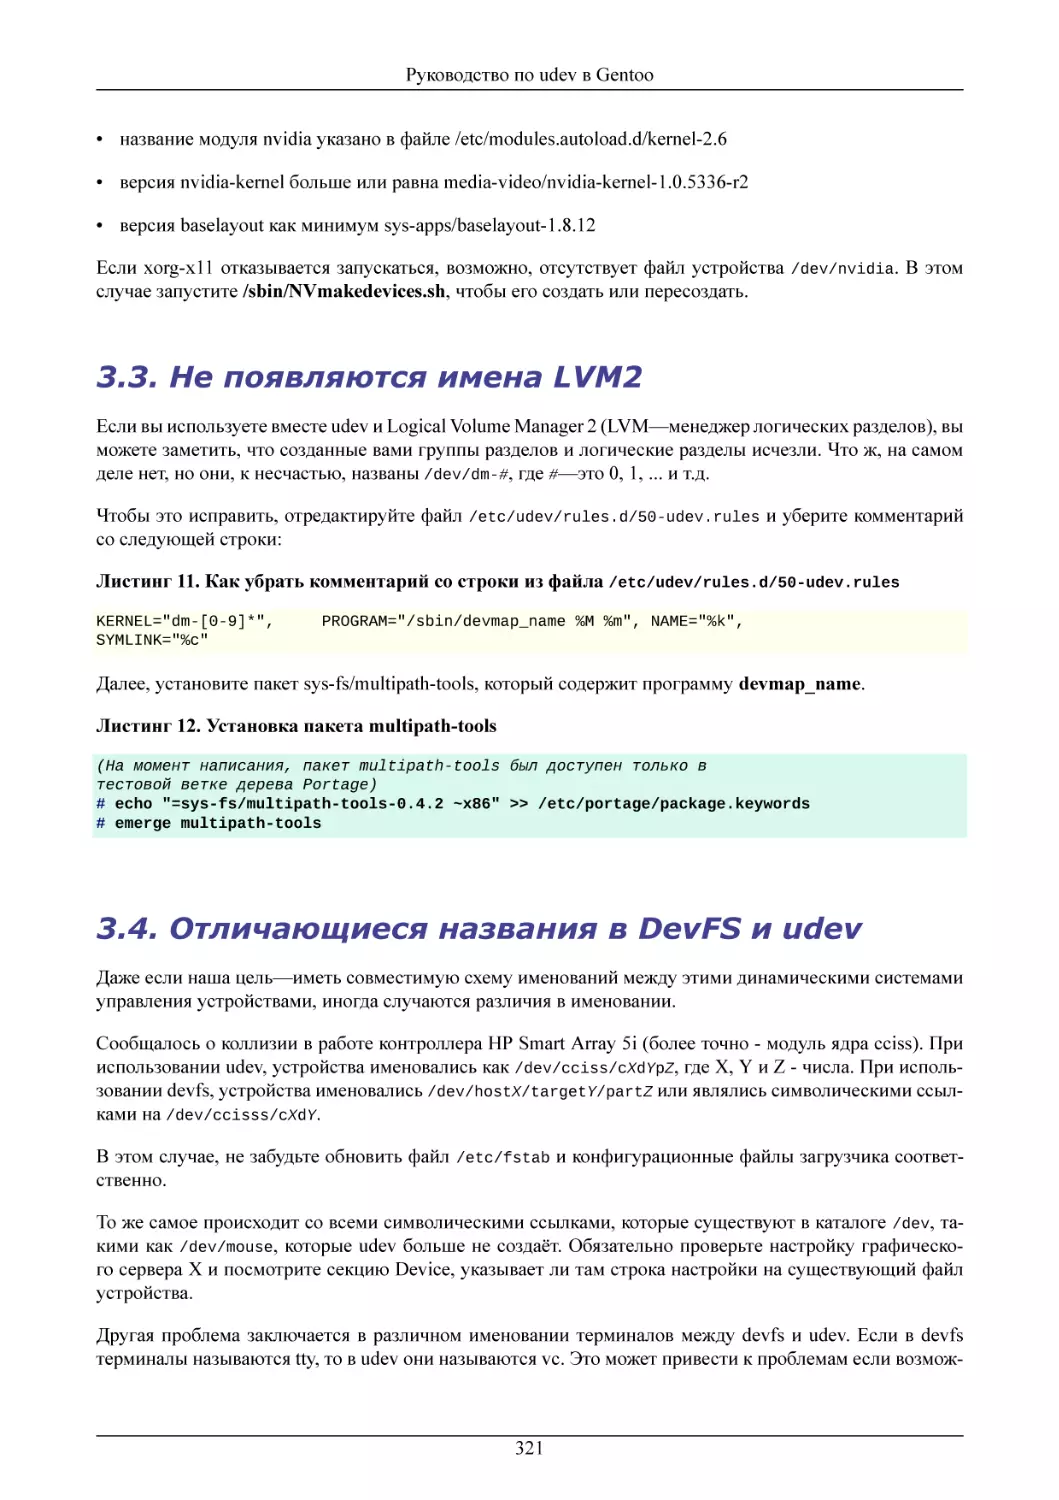 Не появляются имена LVM2
Отличающиеся названия в DevFS и udev